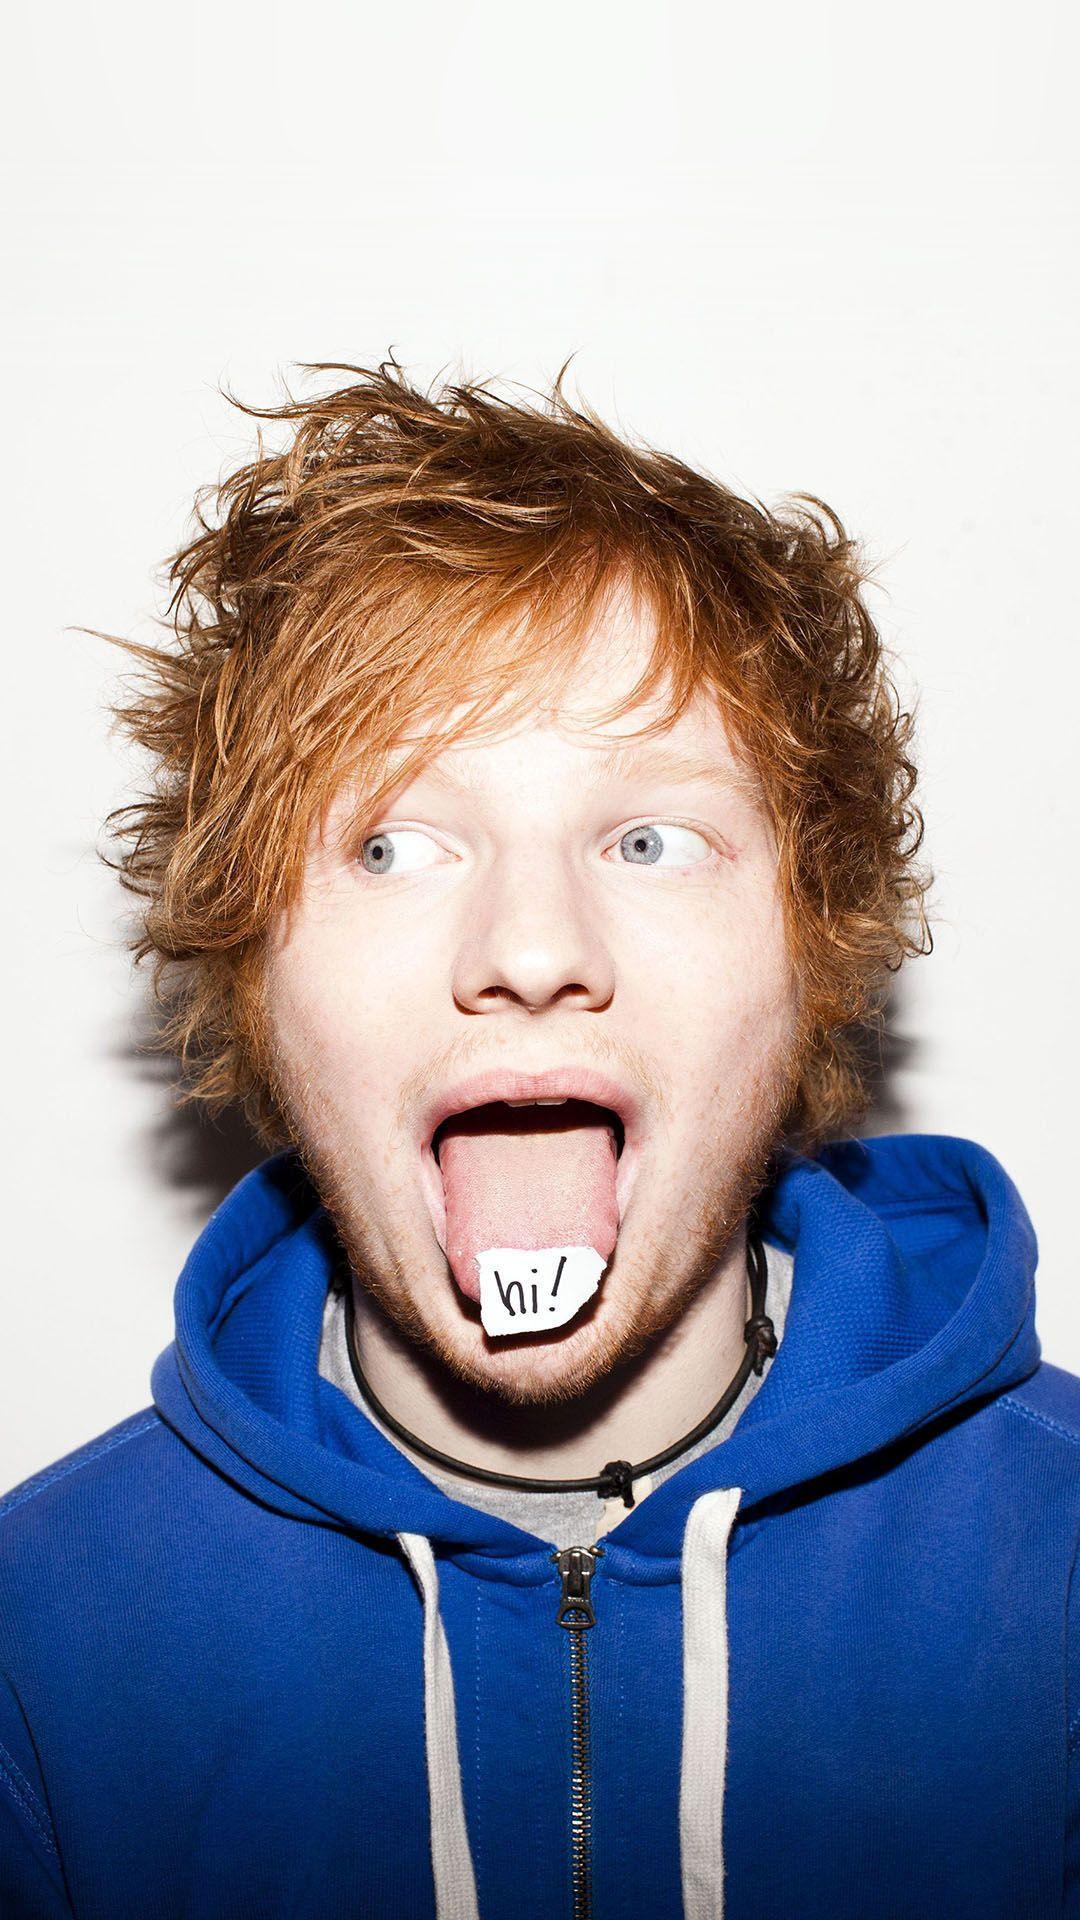 Ed Sheeran English Singer Songwriter Android Wallpaper free download